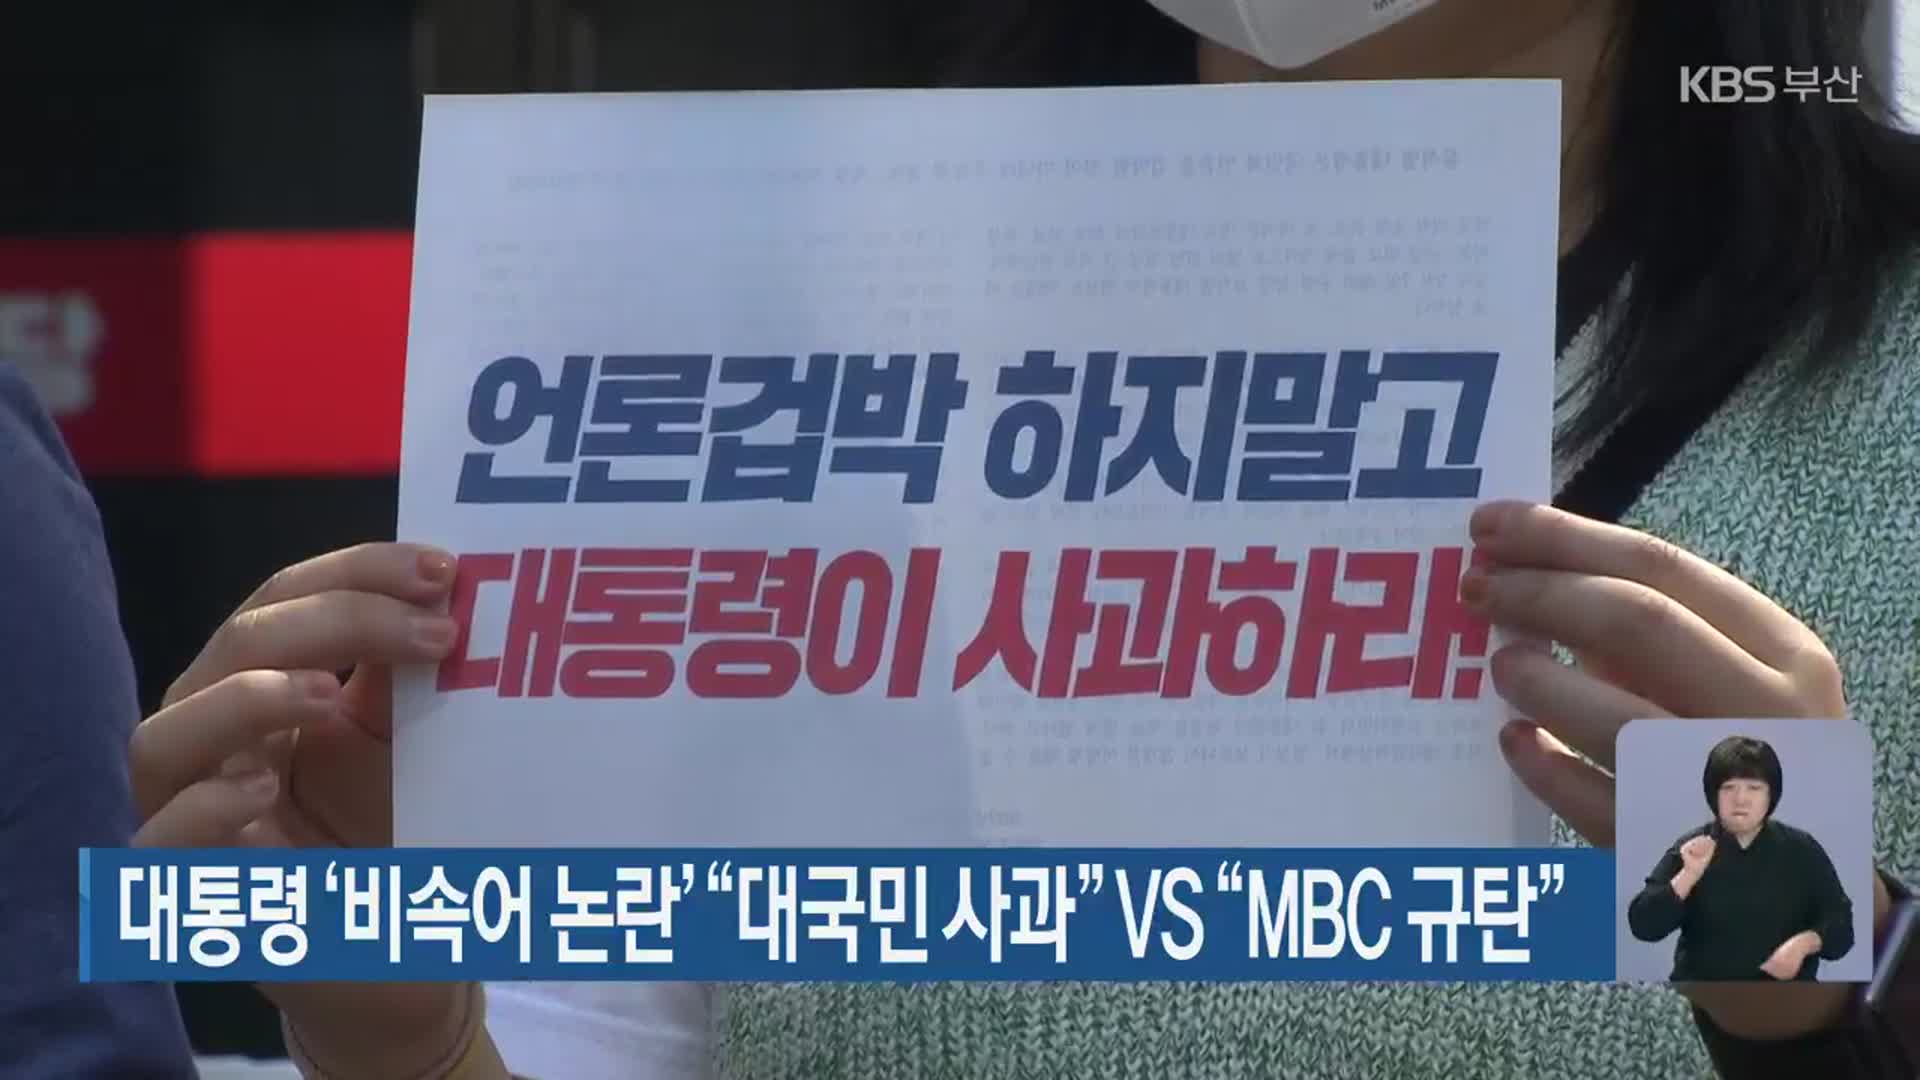 대통령 ‘비속어 논란’ “대국민 사과” vs “MBC 규탄”